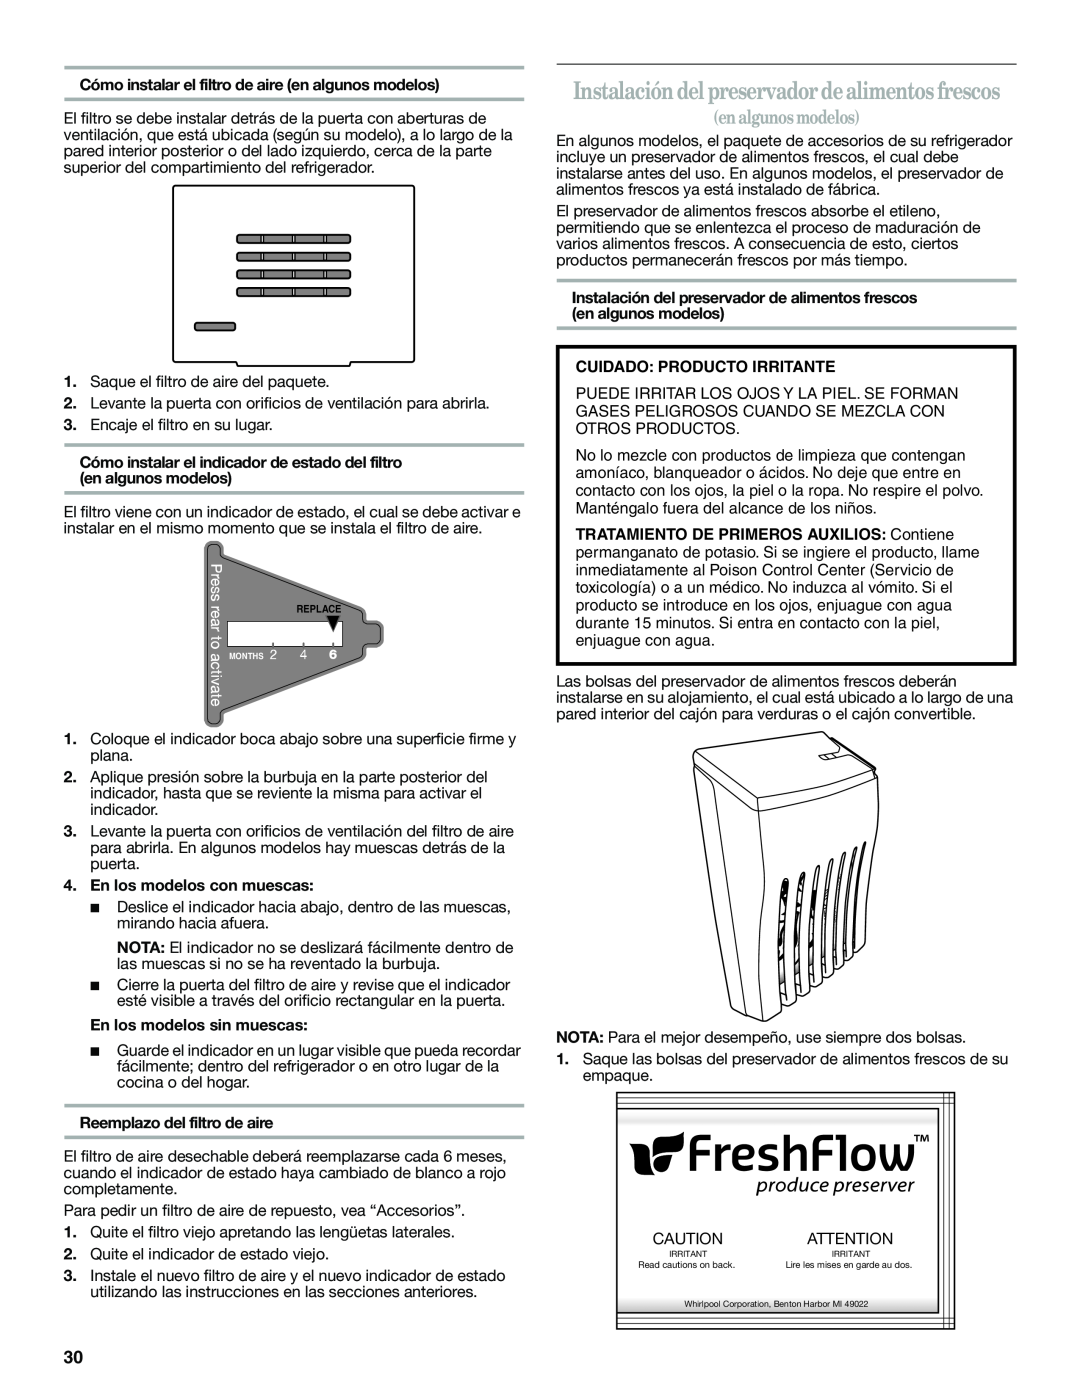 Whirlpool ED2KHAXVT manual Instalación del preservador de alimentos frescos, en algunos modelos, En los modelos con muescas 